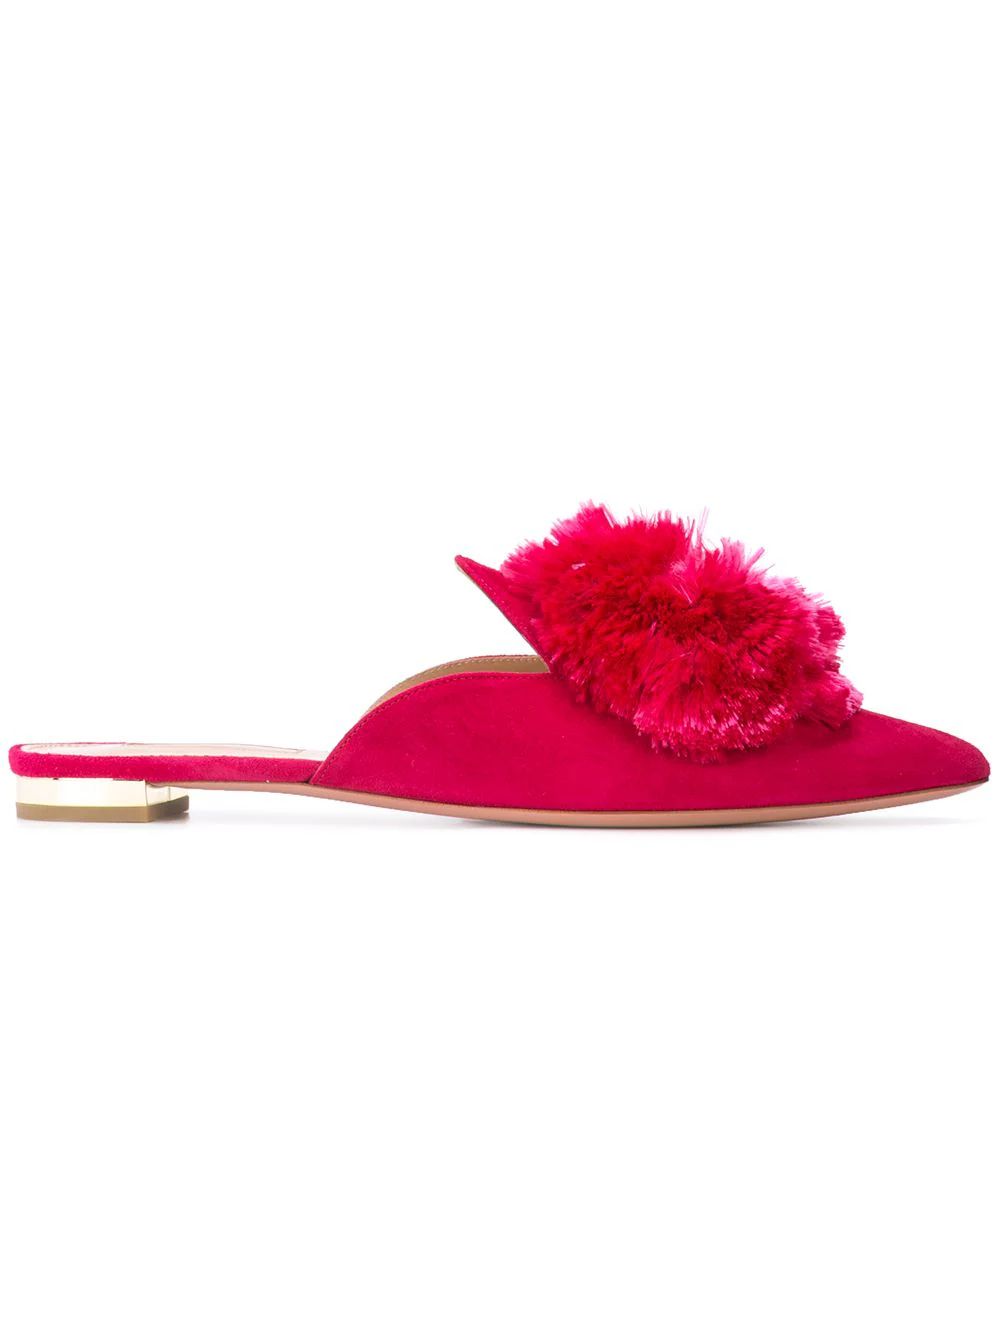 Aquazzura pompom slippers - Pink | FarFetch Global